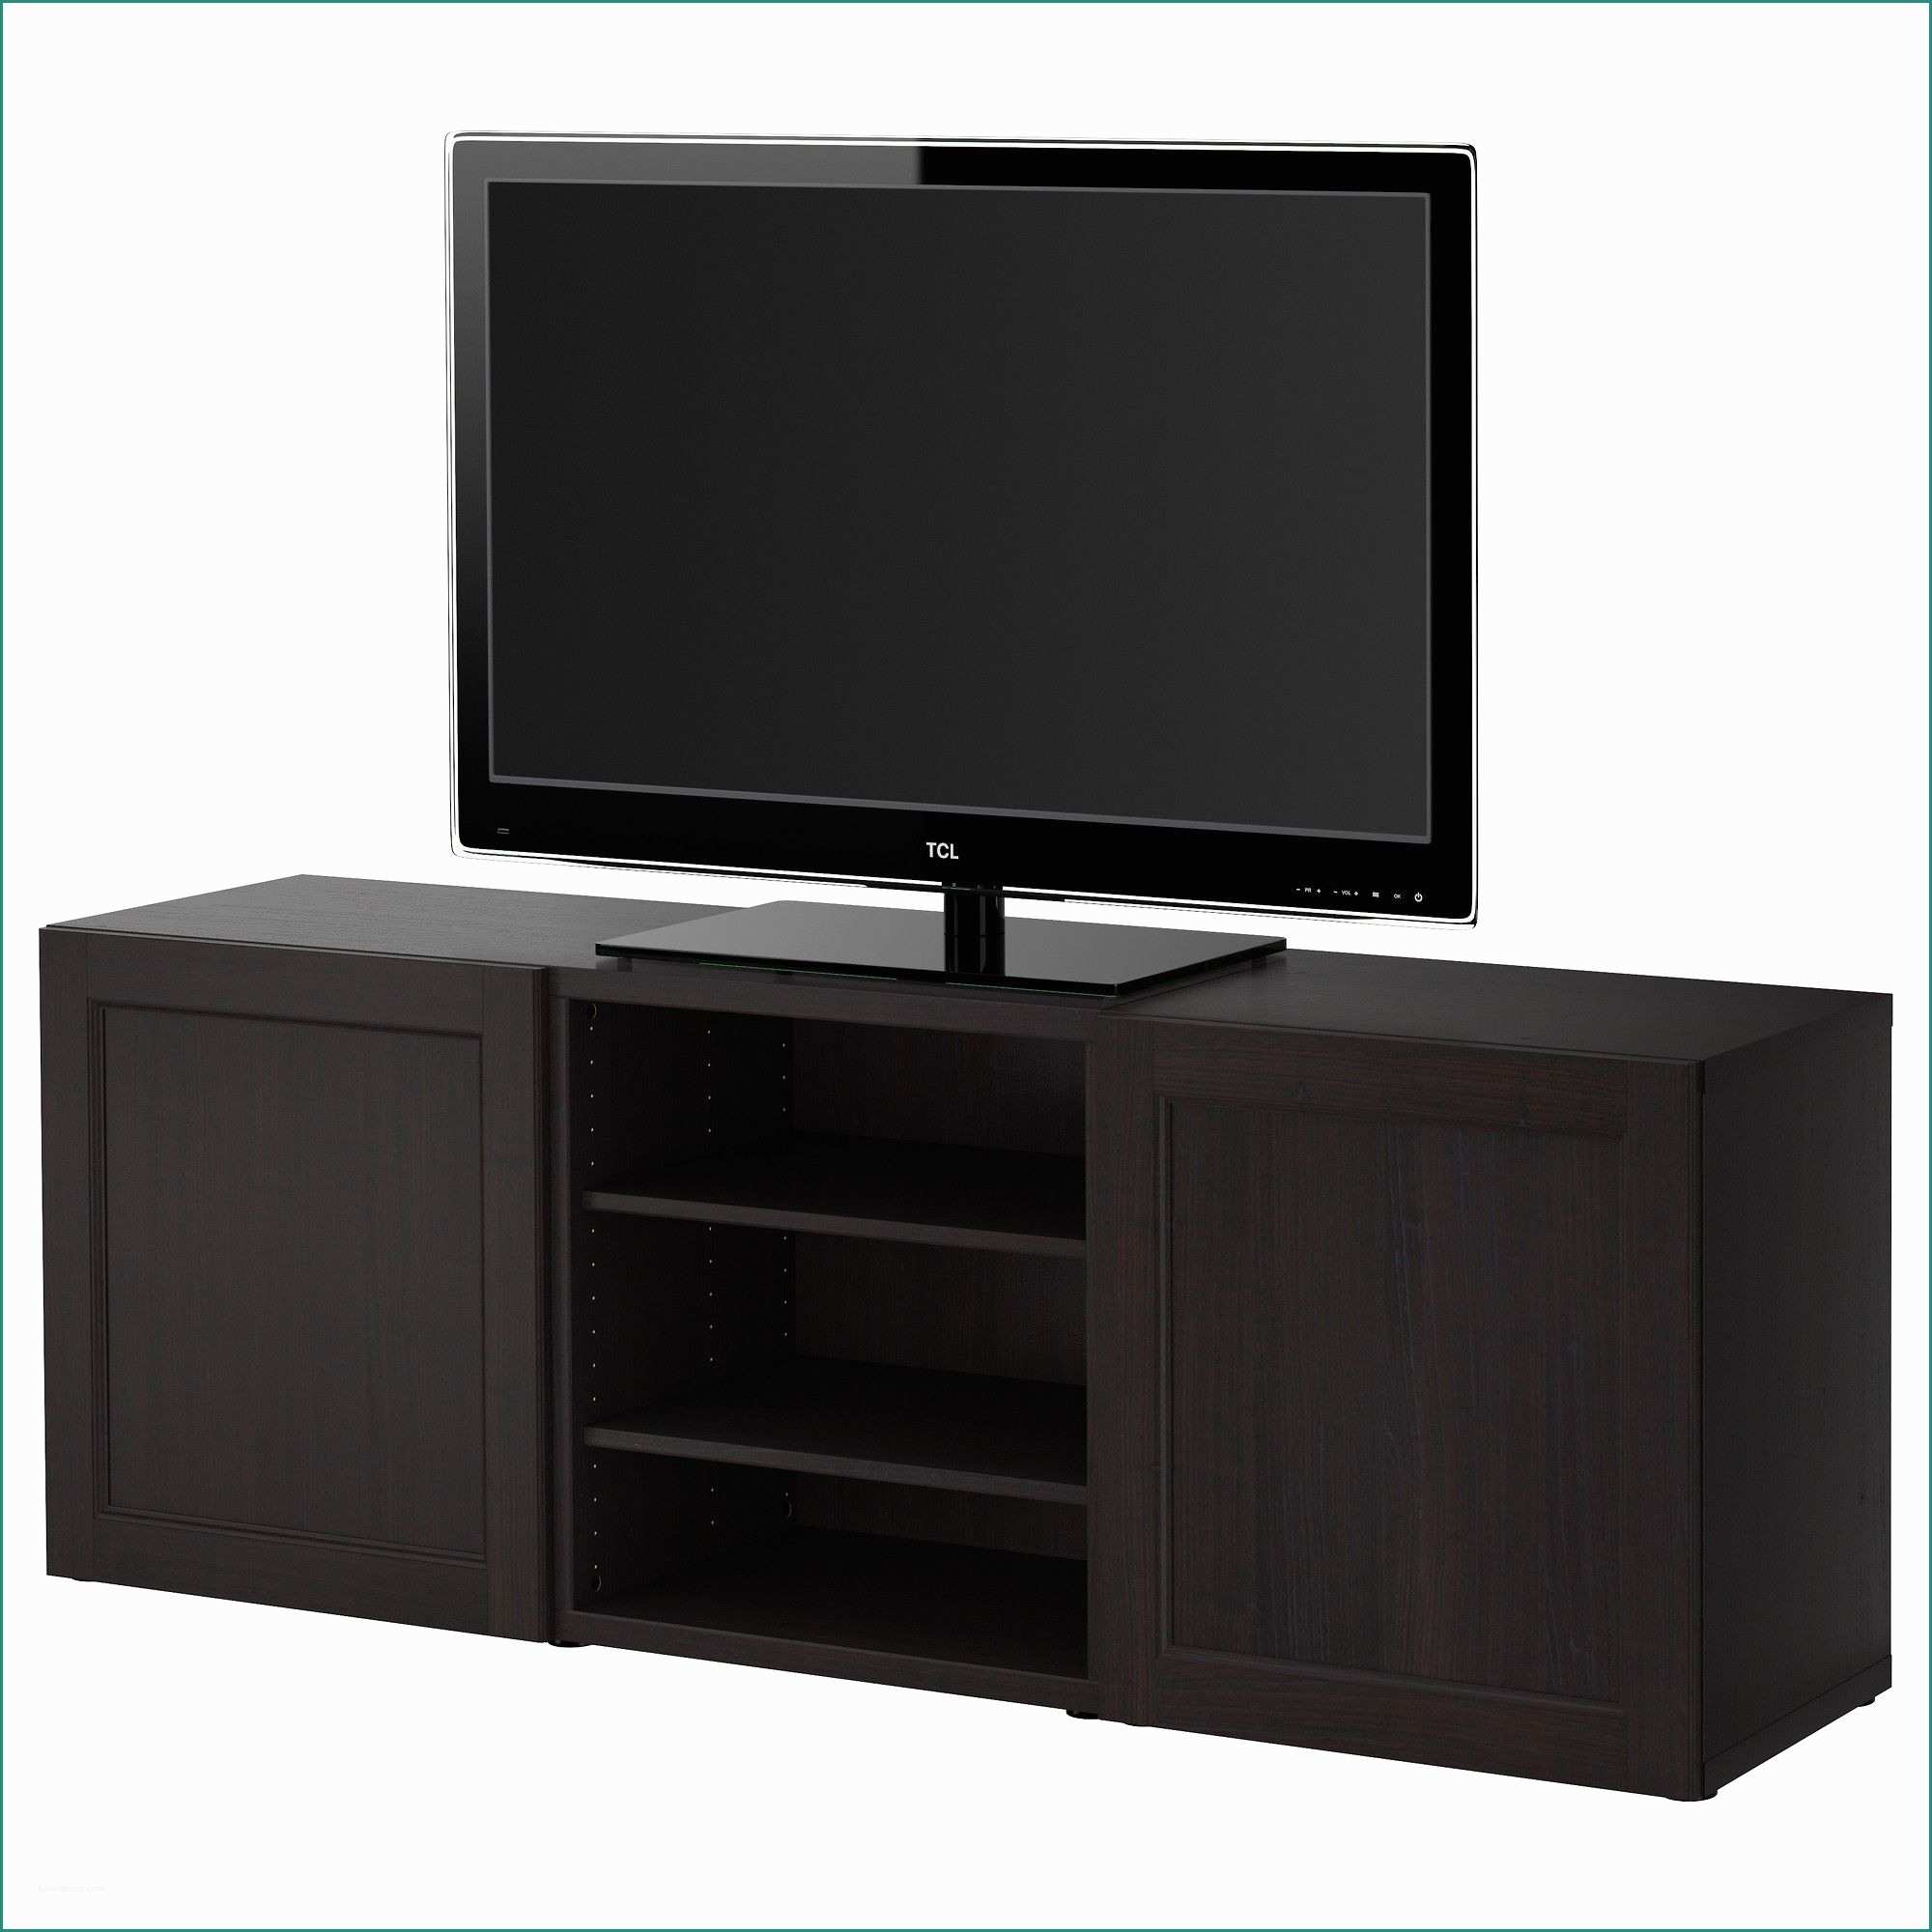 Armadio Porta Tv Camera Da Letto E Best Tv Storage Bination Ikea Furniture